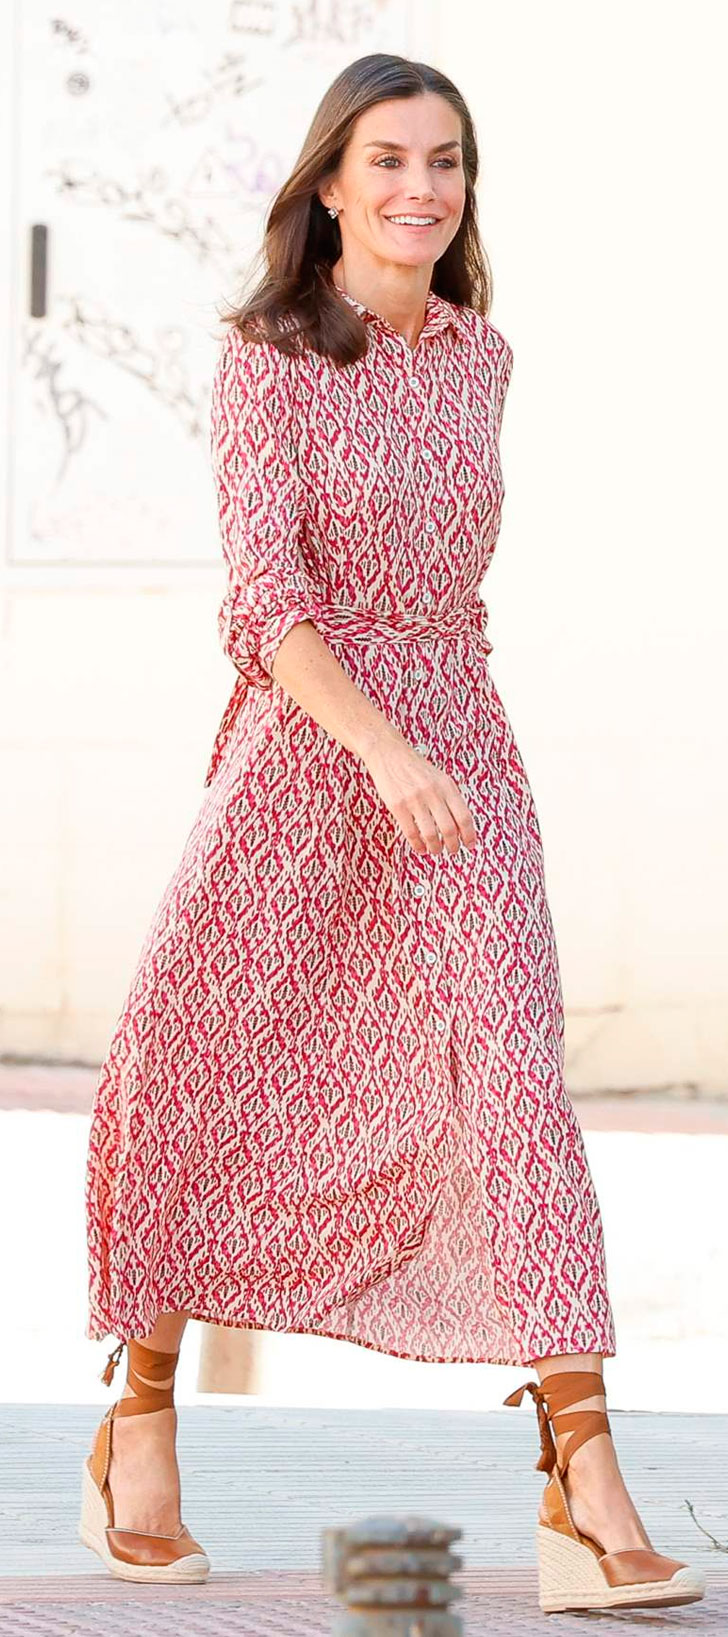 Queen Letizia's Dándara Dress